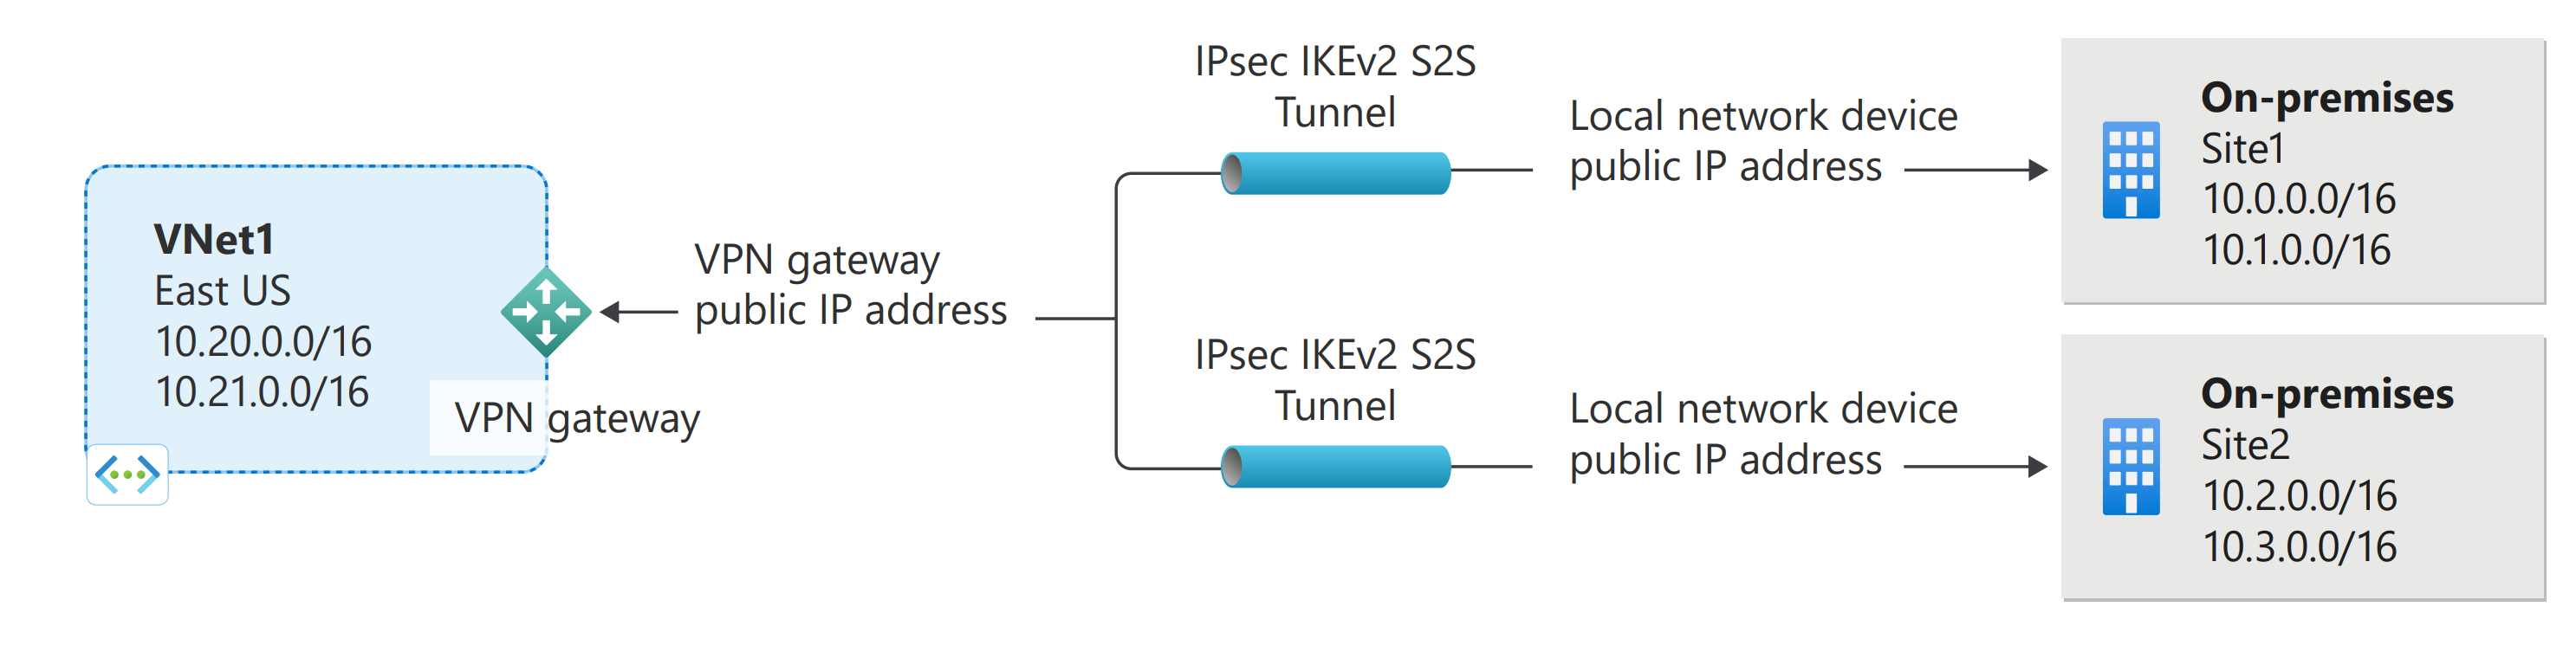 Több helyek közötti Azure VPN Gateway-kapcsolatot bemutató ábra.